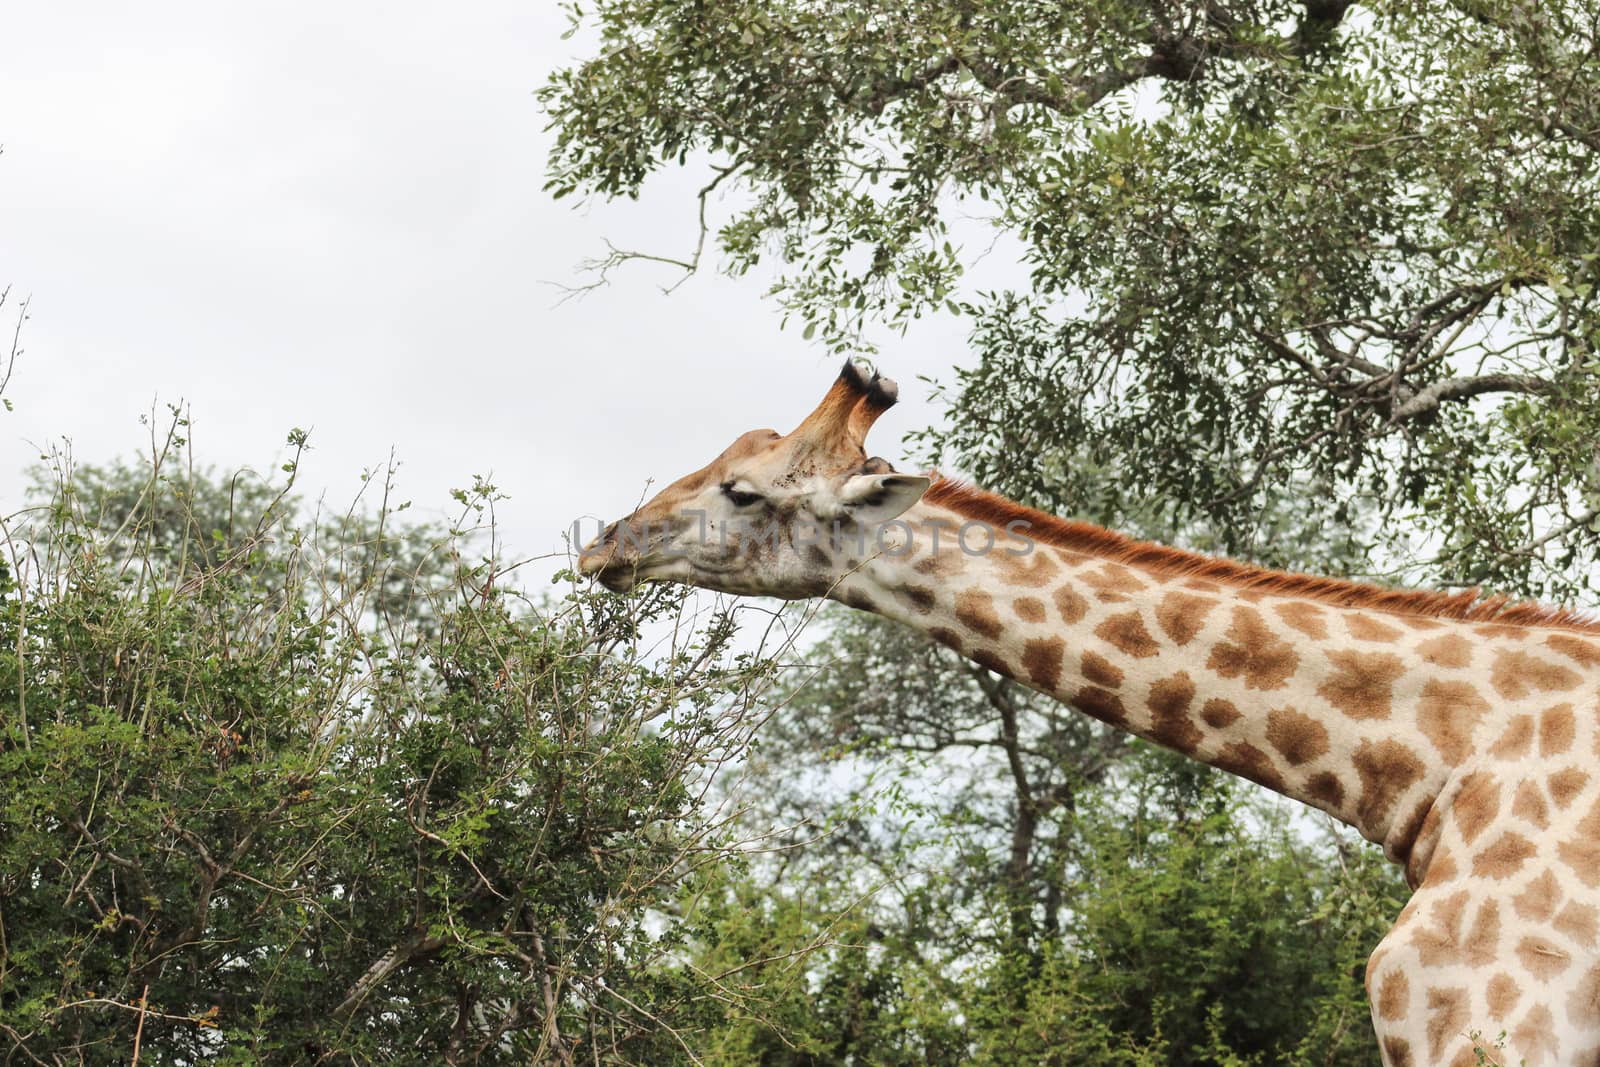 Giraffe reaching for leafs by RiaanAlbrecht